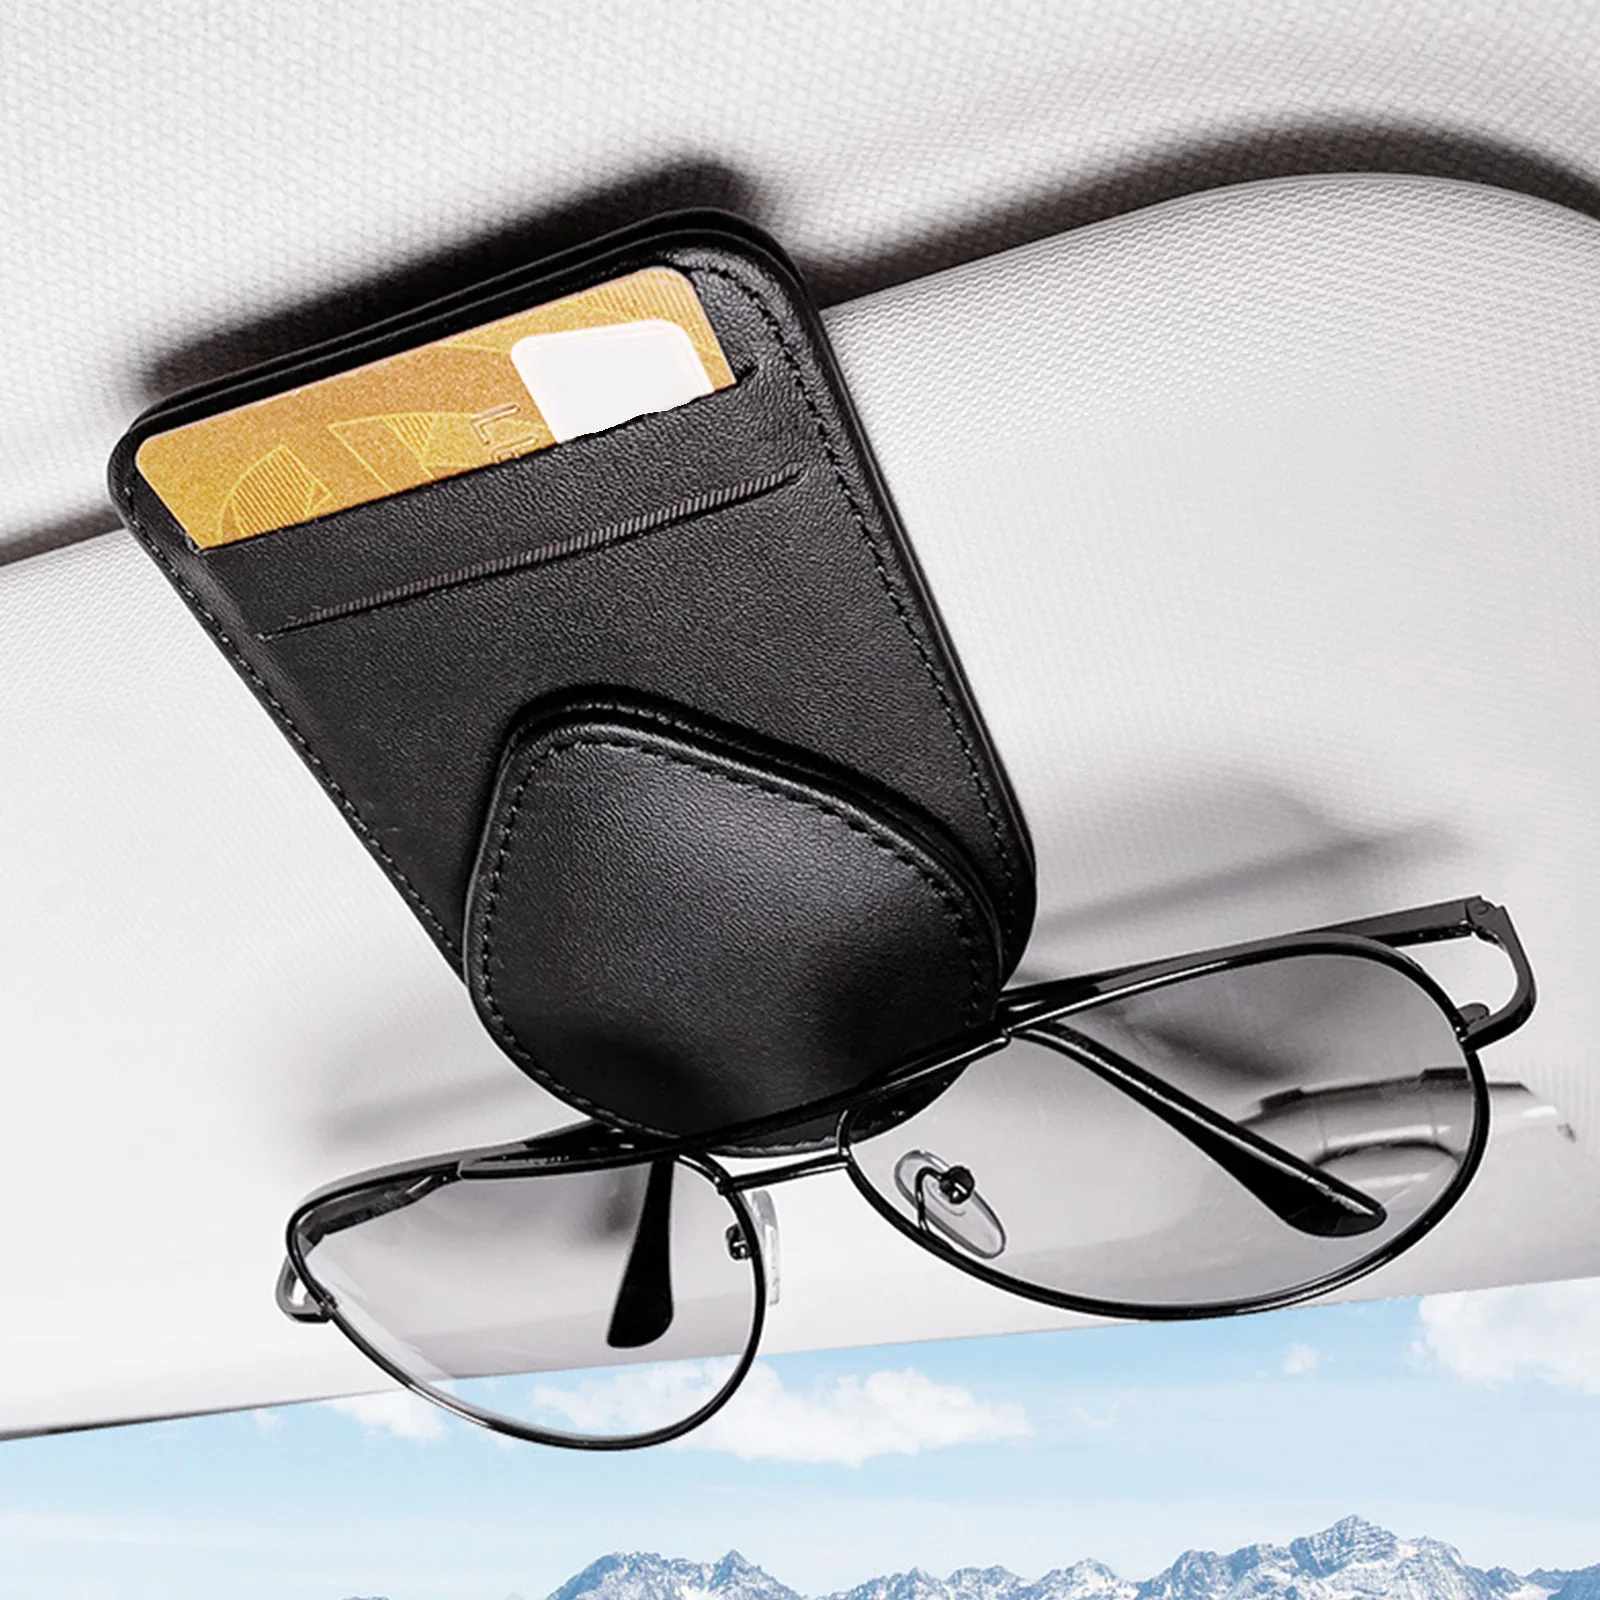 Leather Sun Visor Glasses Clip Universal Car Interior Card Ticket Fastener Portable Sunglasses Holder Clips Auto Accessories